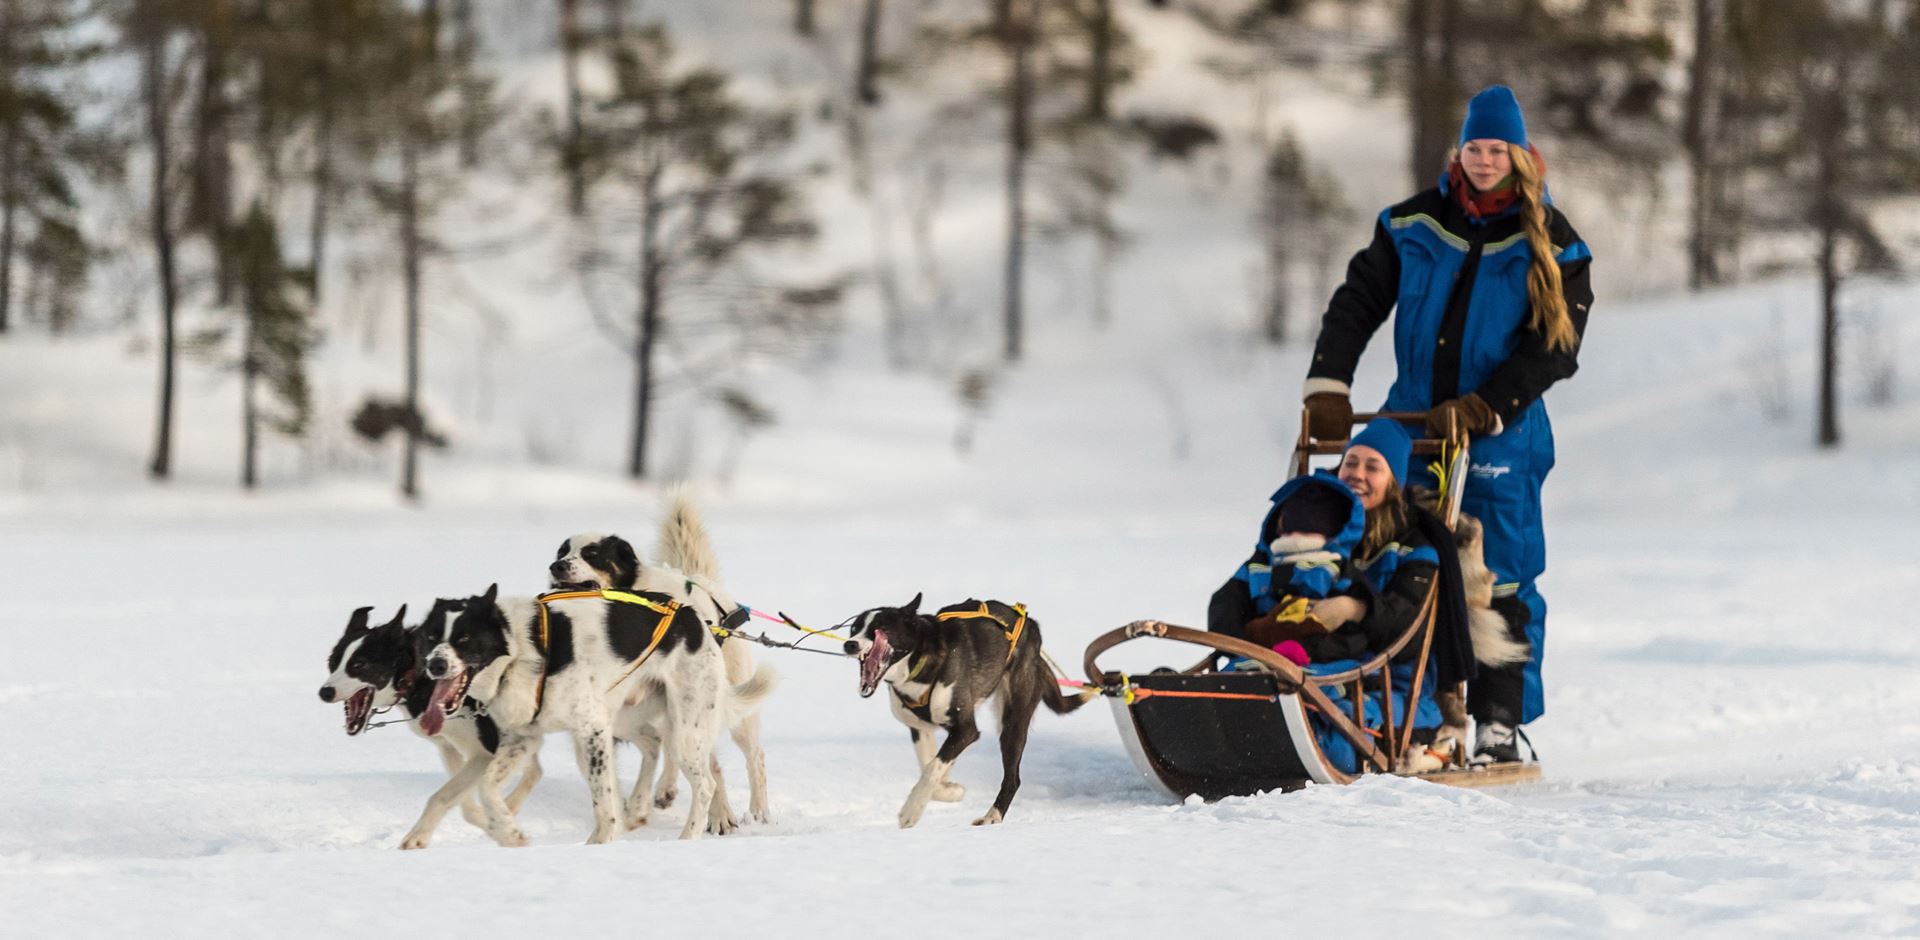 Norge Malangen Resort Dogsledding Family